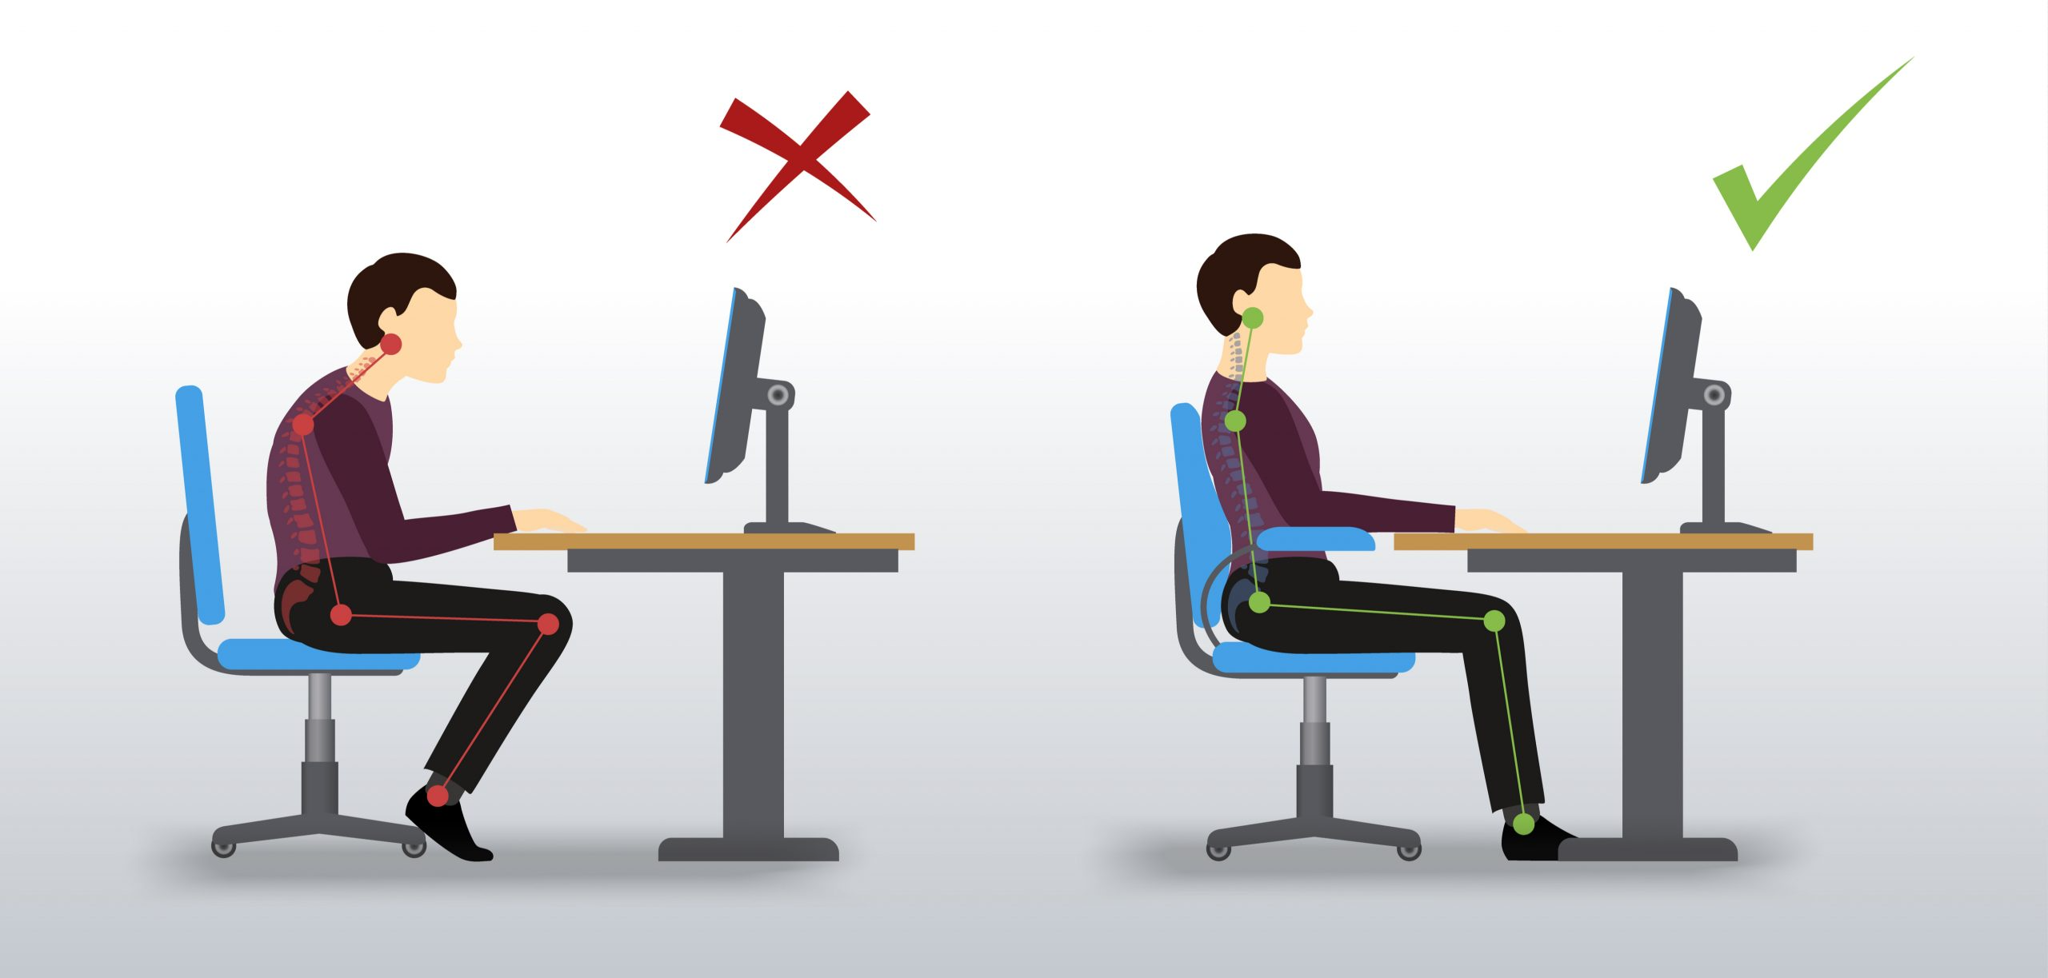 Tìm hiểu cách ngồi đúng trên ghế làm việc văn phòng với 8 lời khuyên hữu ích